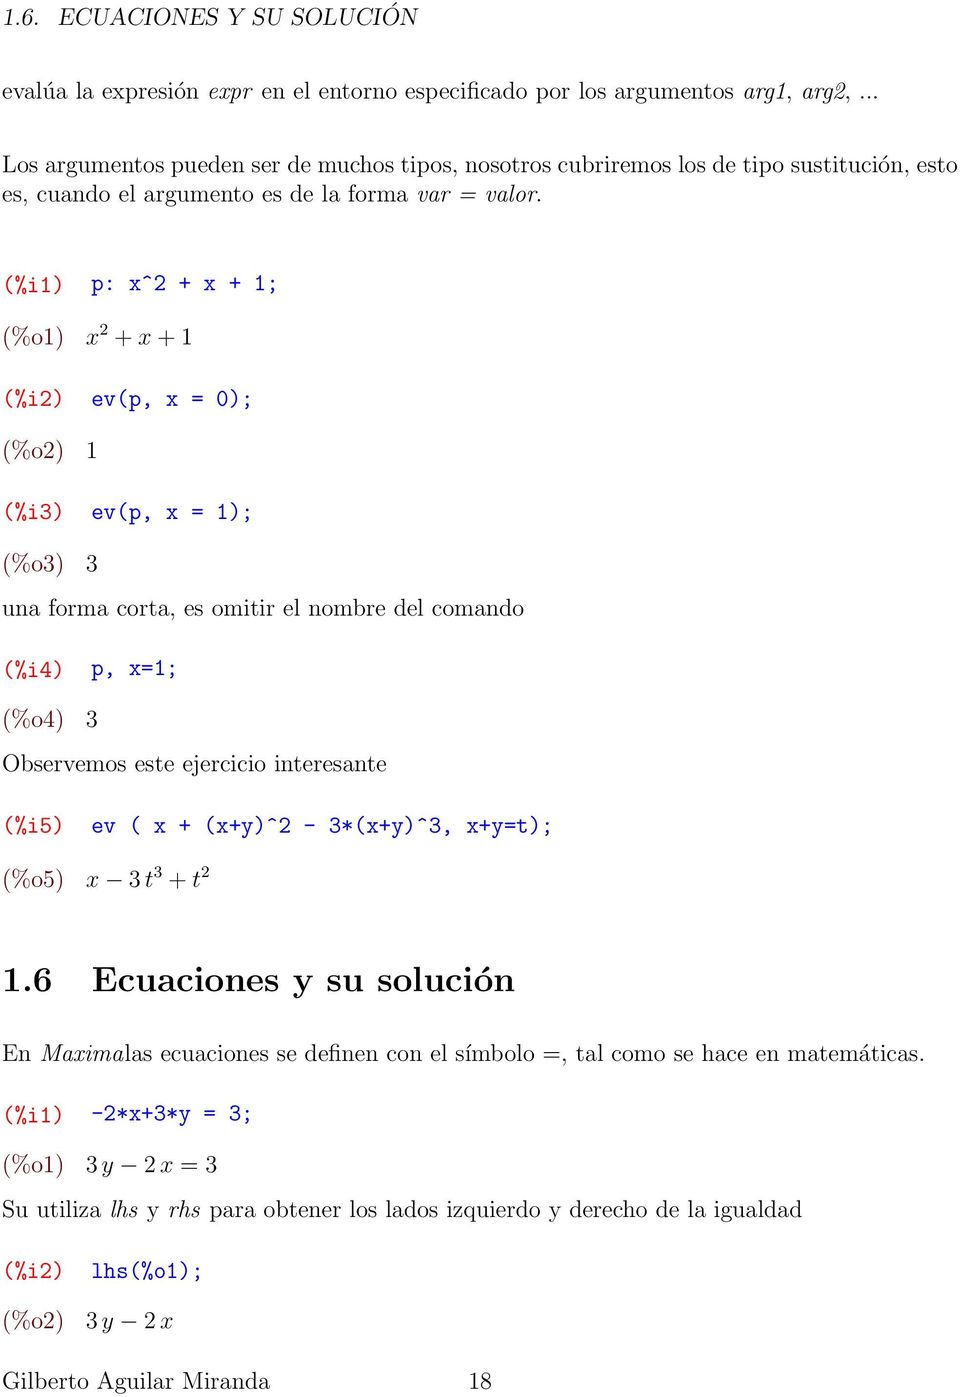 (%i1) p: x^2 + x + 1; (%o1) x 2 + x + 1 (%i2) ev(p, x = 0); (%o2) 1 (%i3) ev(p, x = 1); (%o3) 3 una forma corta, es omitir el nombre del comando (%i4) p, x=1; (%o4) 3 Observemos este ejercicio